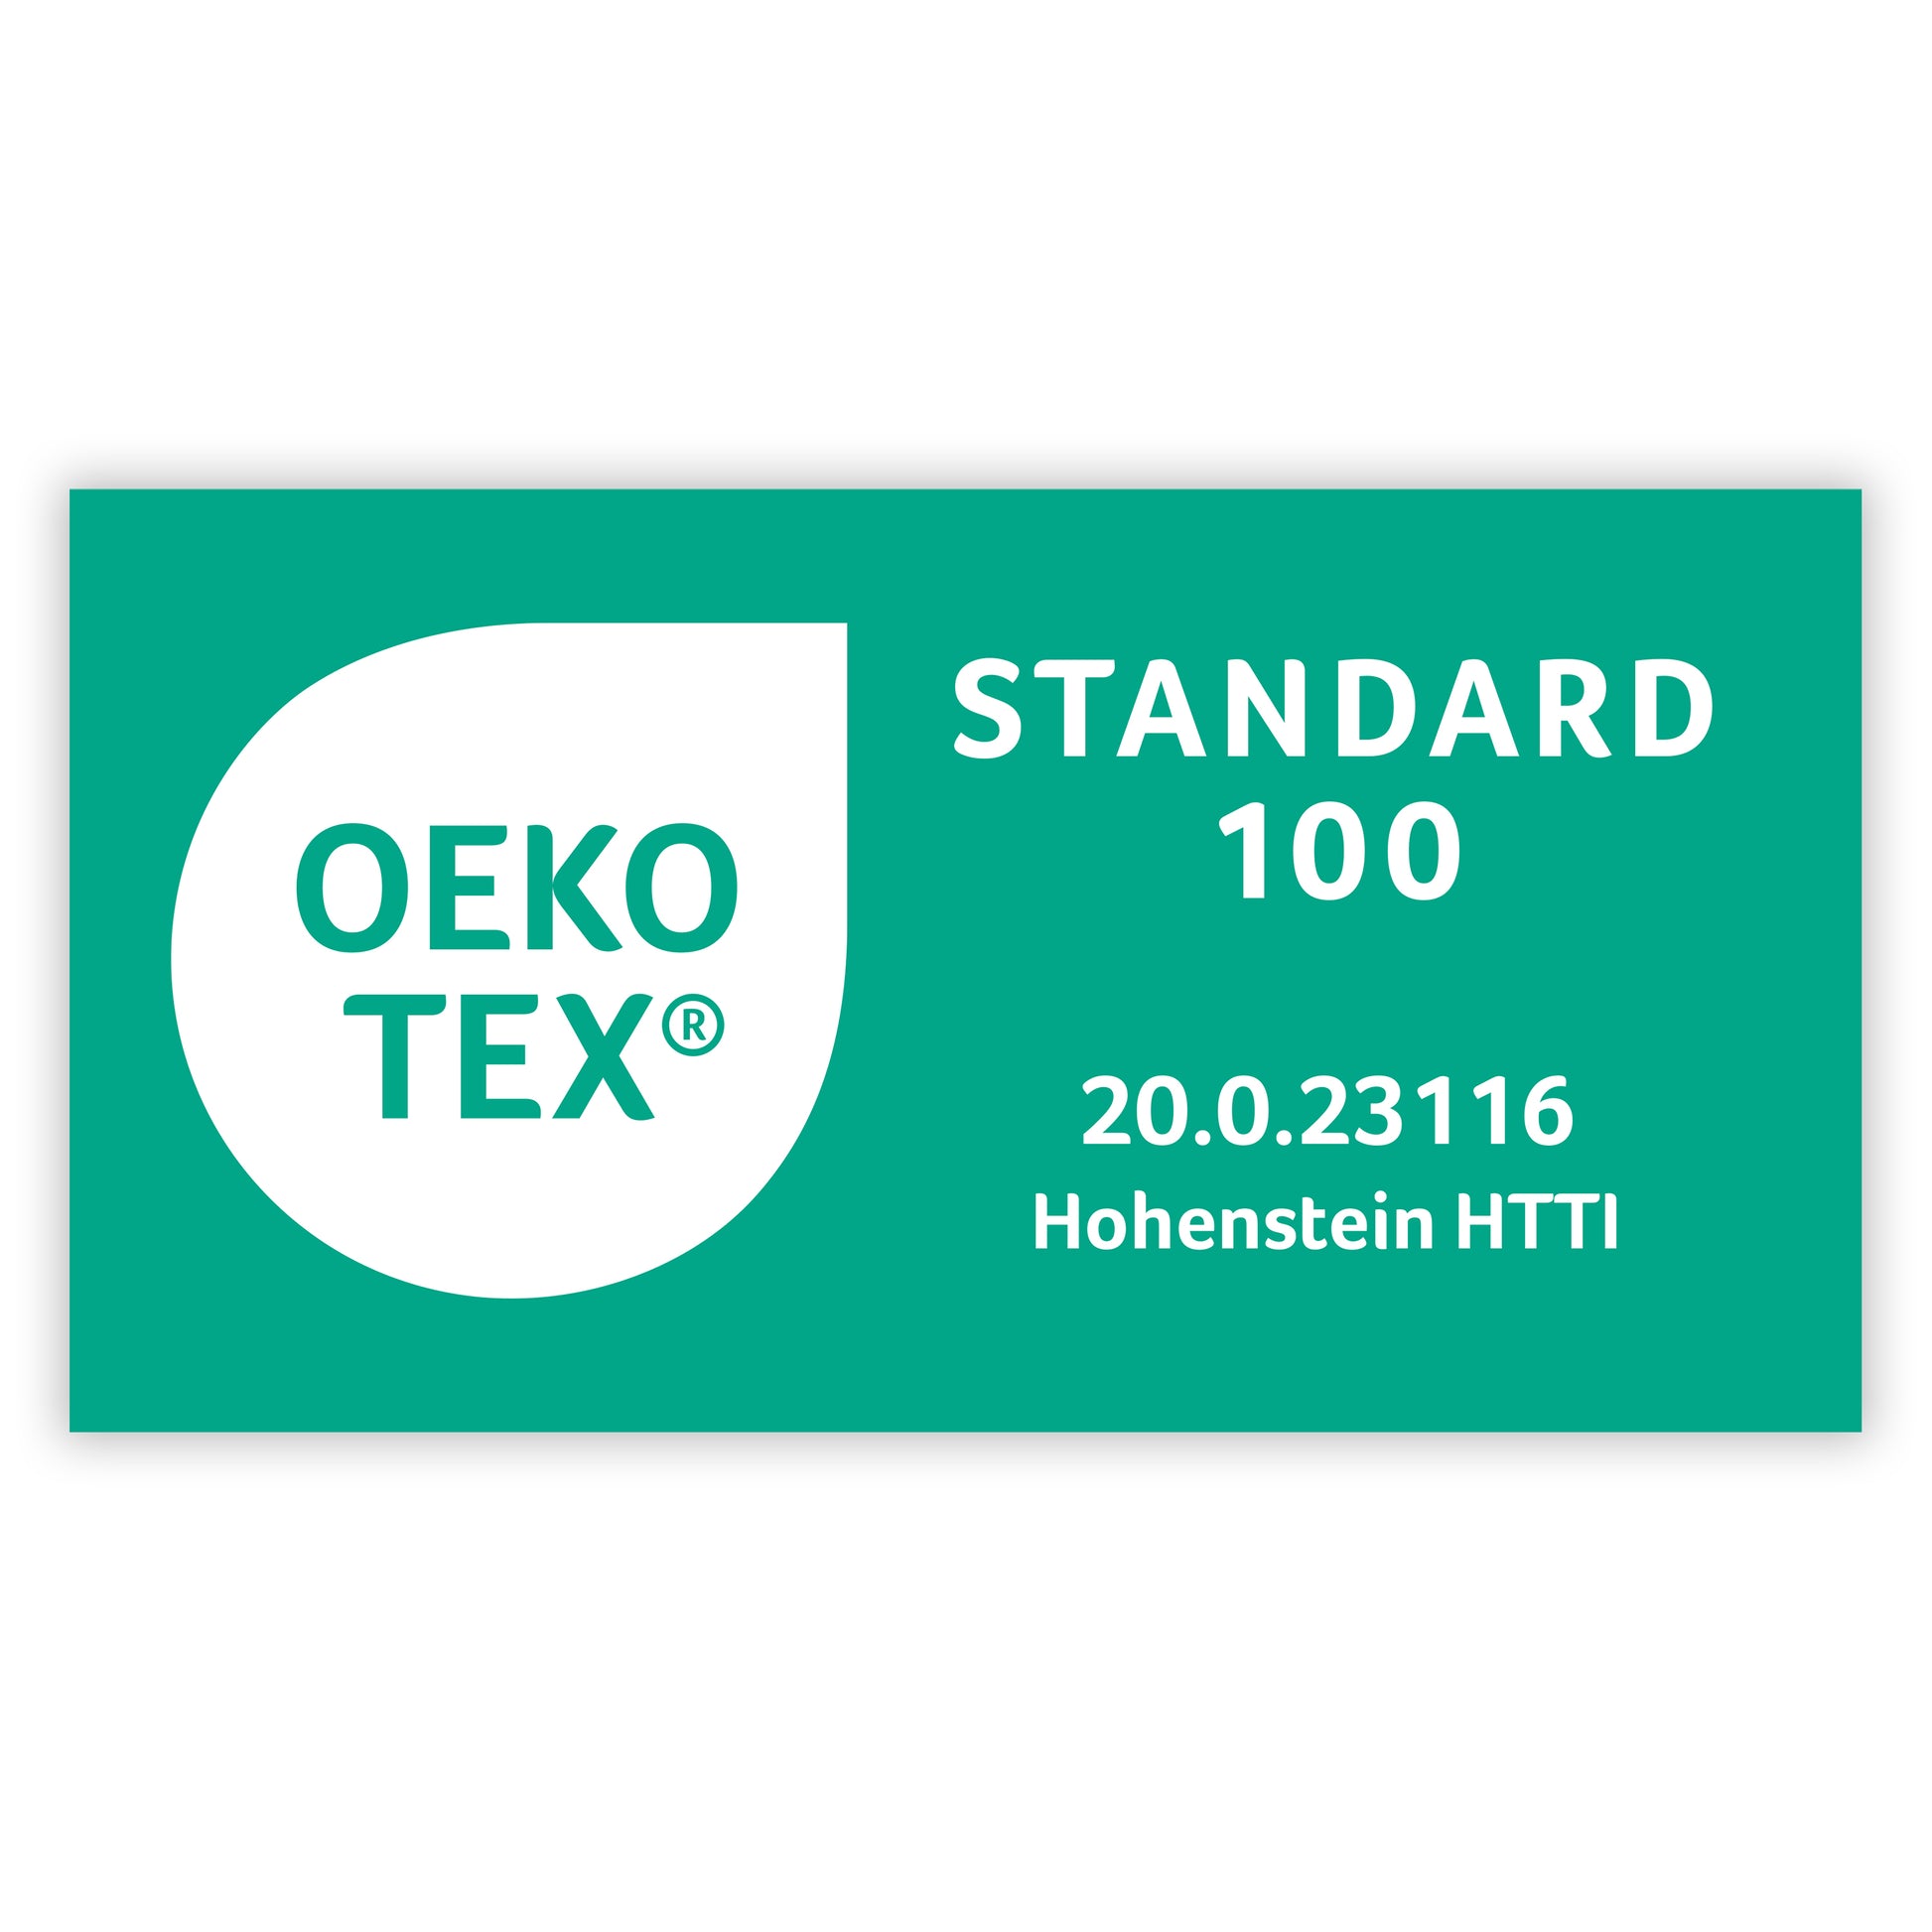 OEKO-TEX® Standard 100 Zertifikat mit der Nummer 20.0.23116 von Hohenstein HTTI auf grünem Hintergrund.